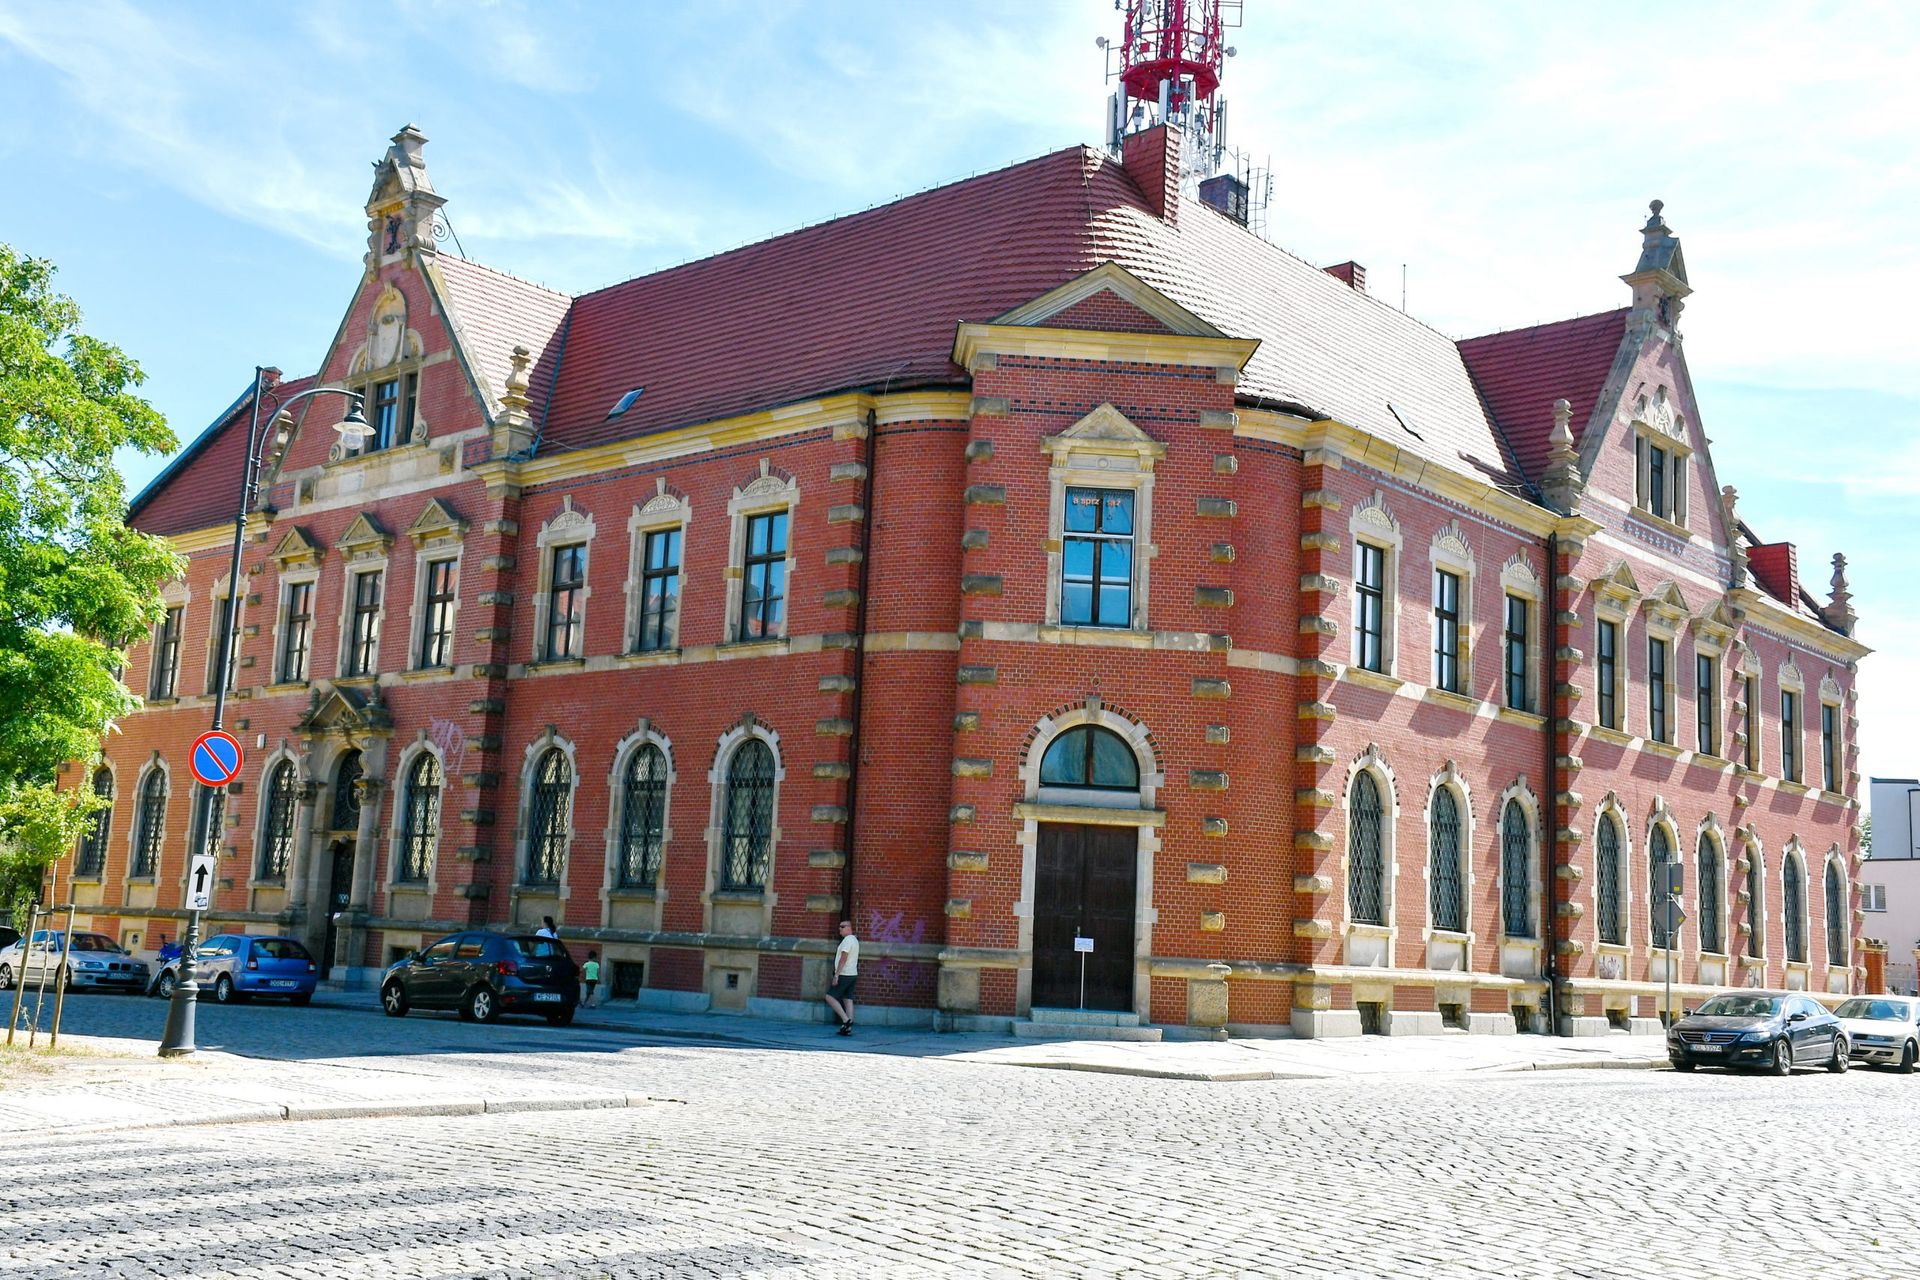  LSSE kupiła zabytkowy budynek starej poczty w Głogowie. Powstanie w nim Miedziowe Centrum Rozwoju Gospodarczego